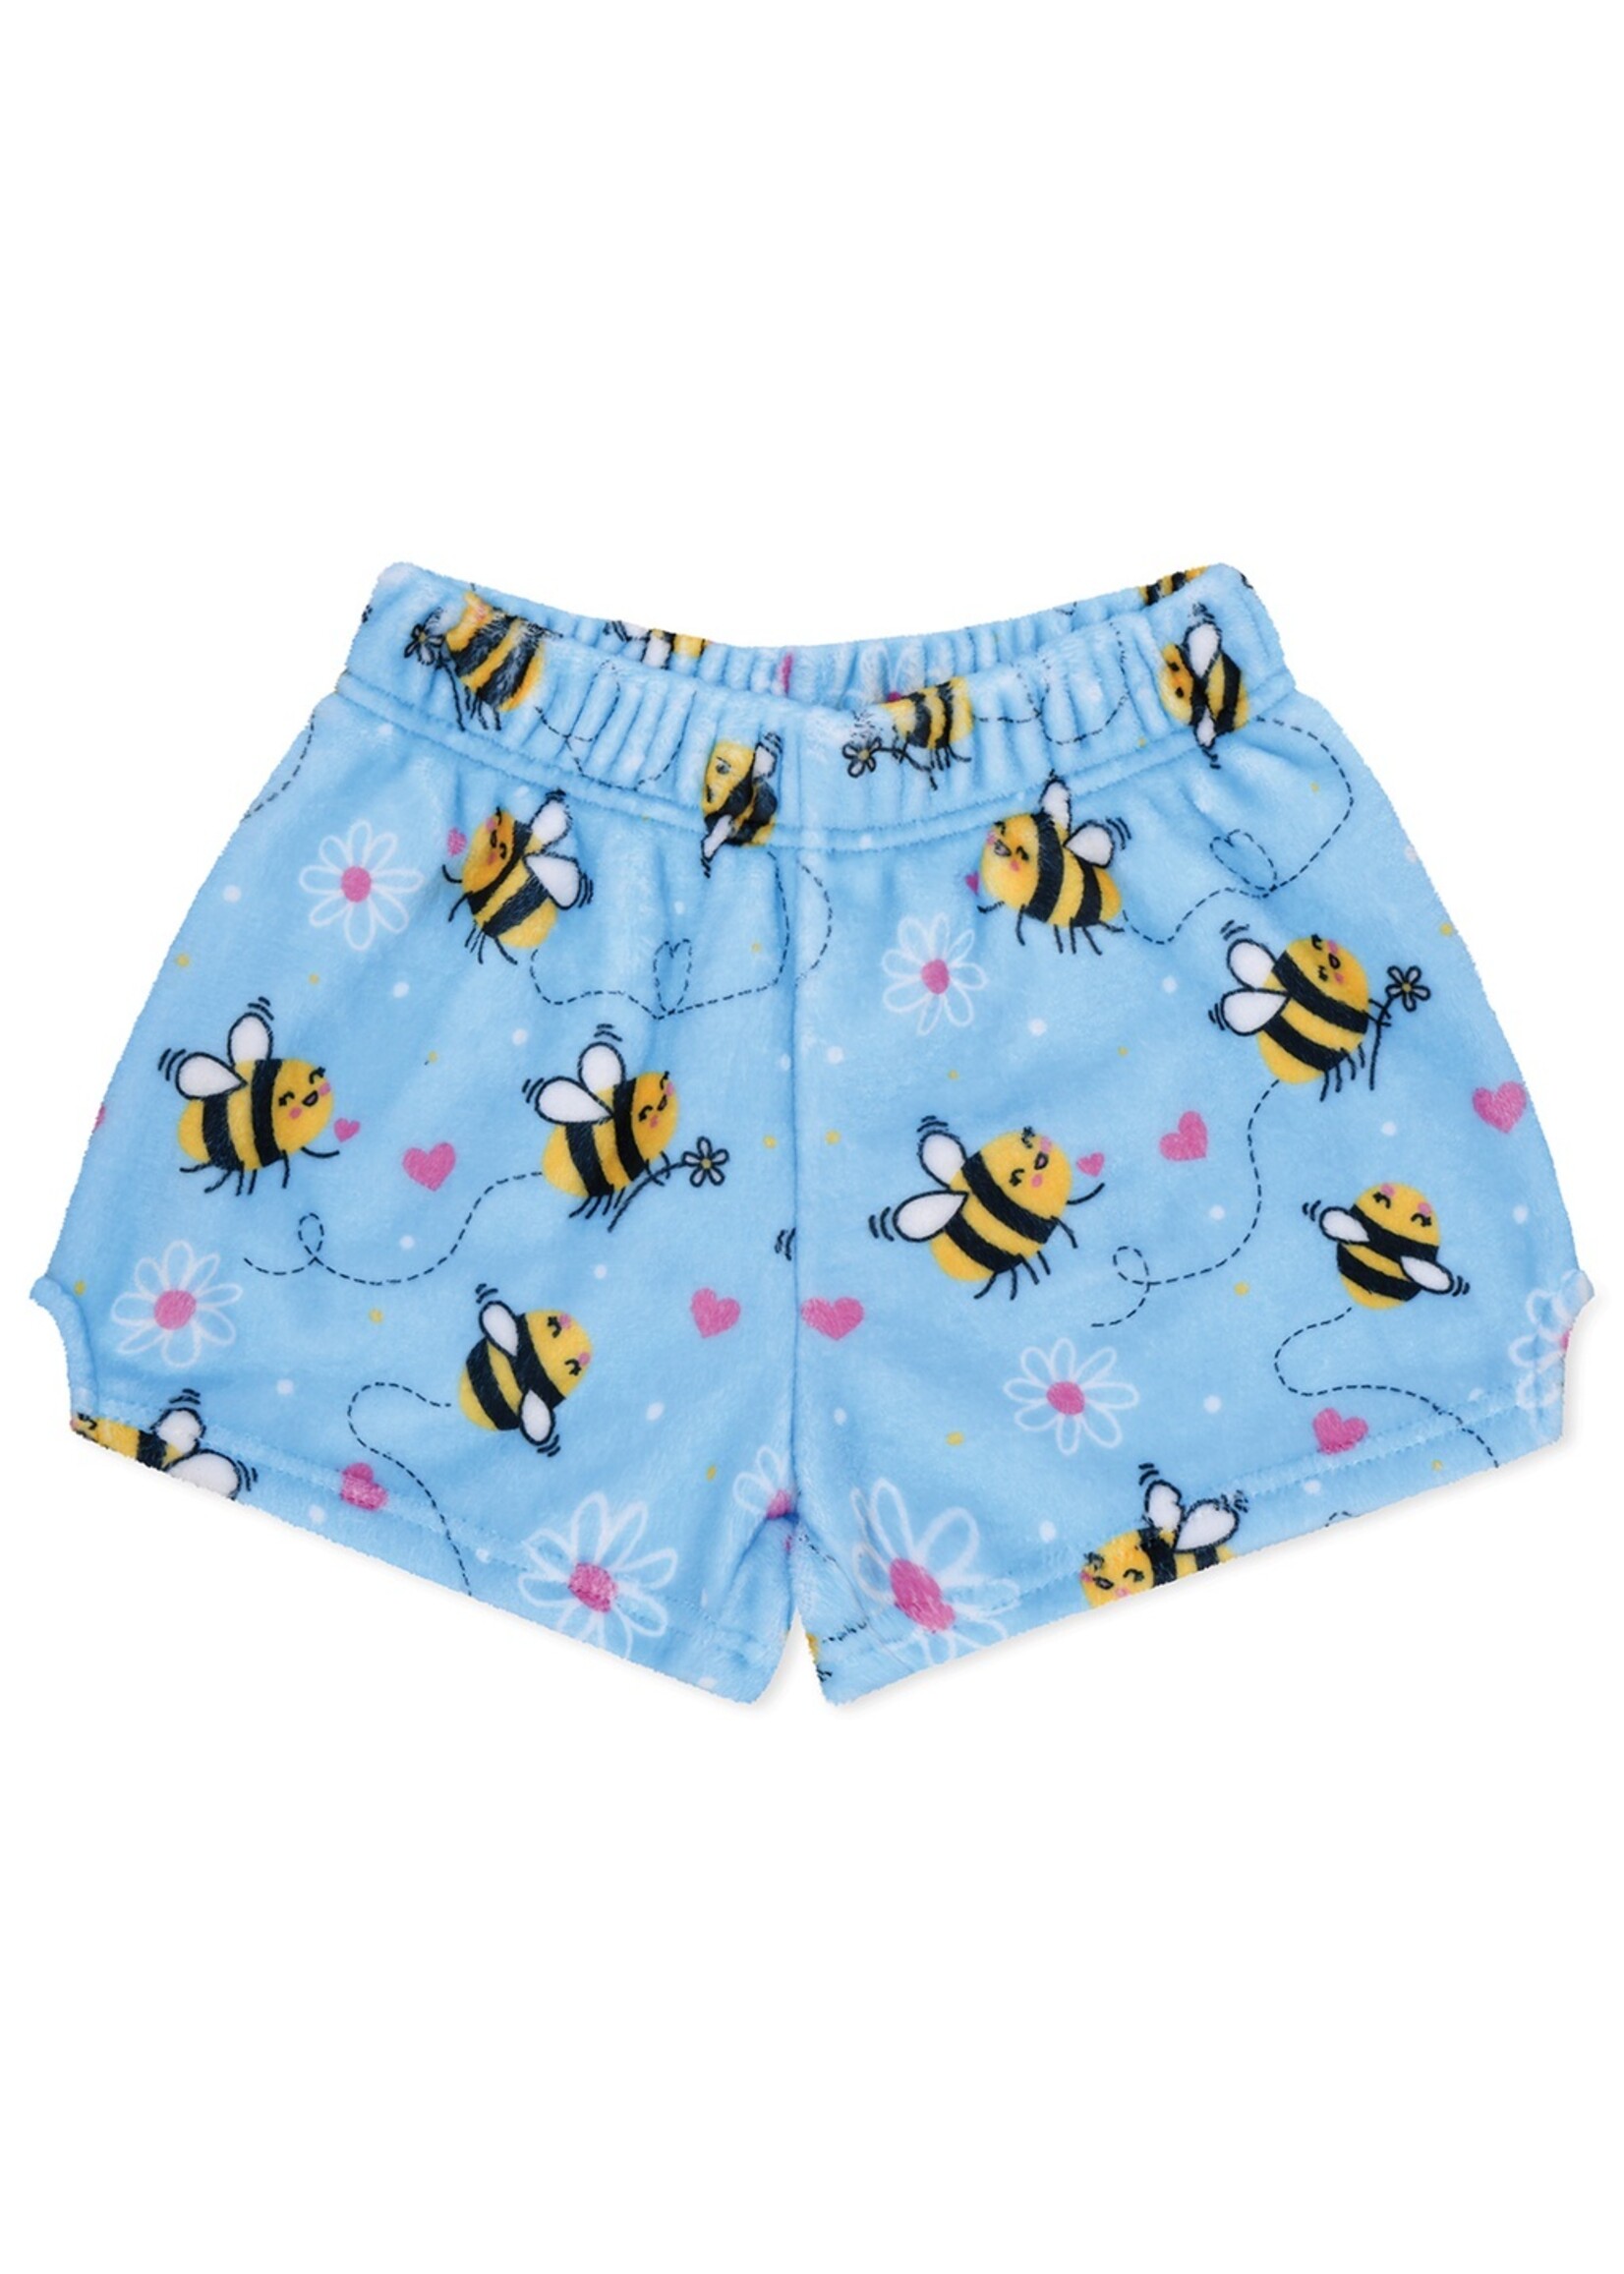 Iscream IScream Bee Loved Plush Shorts